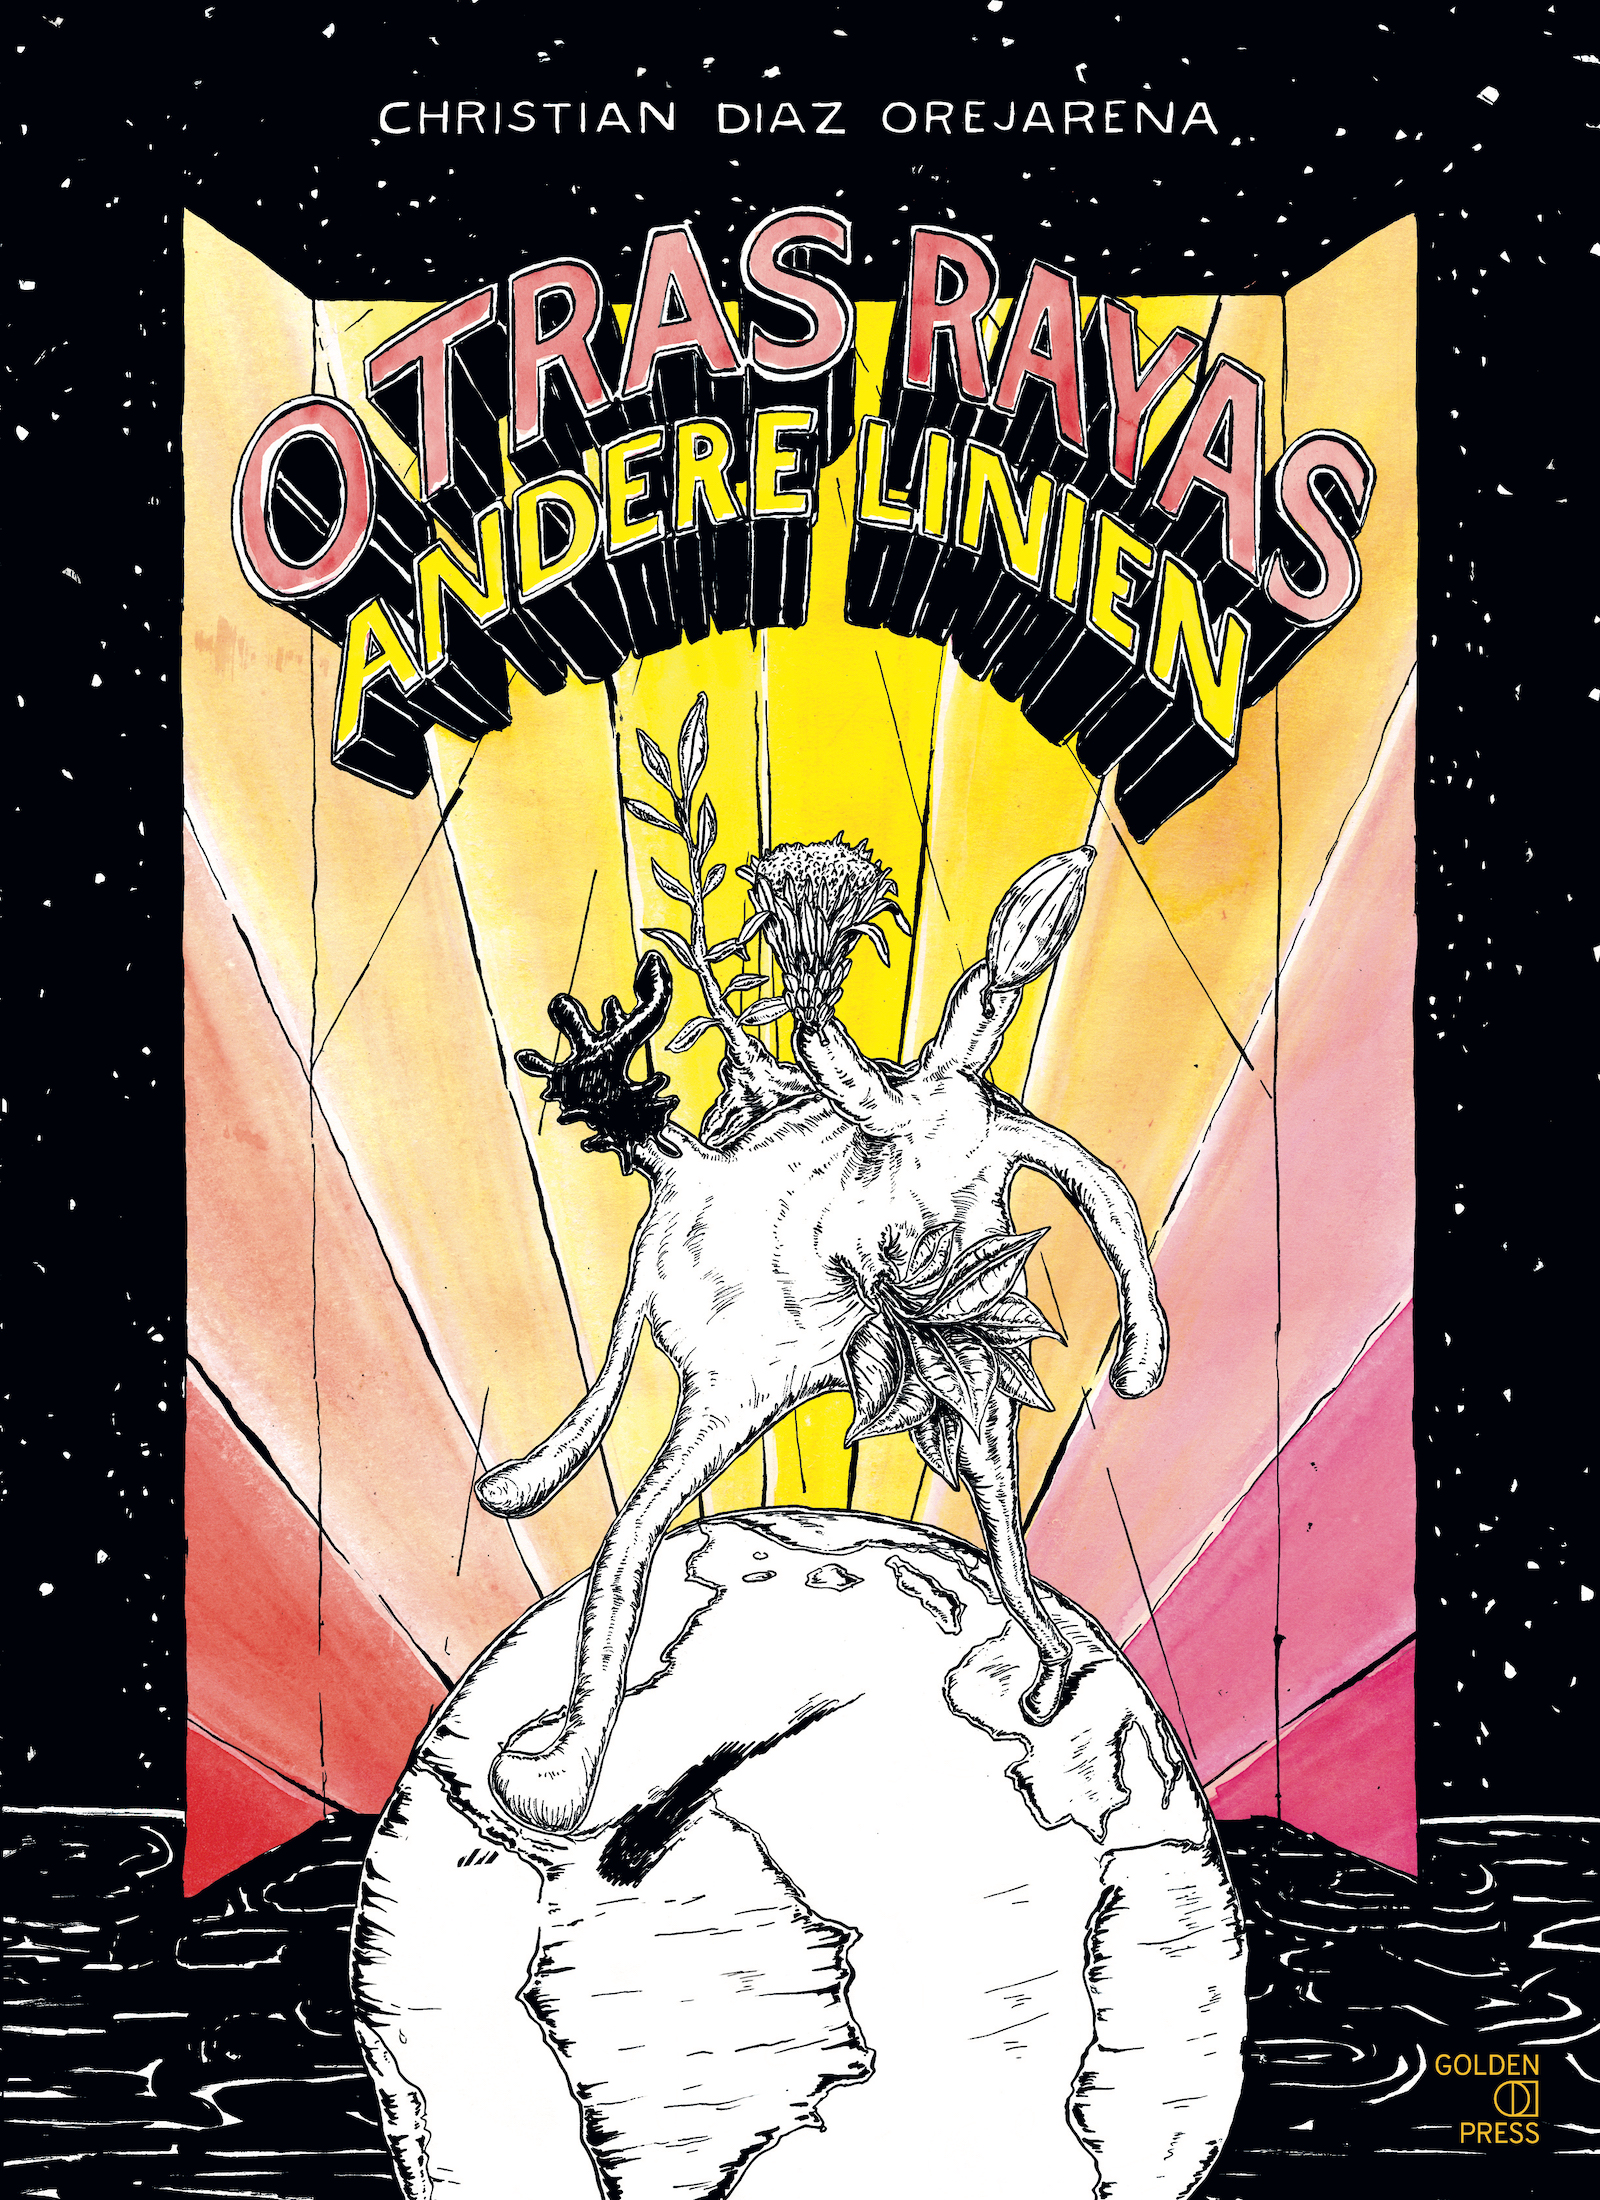 Cover des Comics "Otras Rayas – Andere Linien" von Christian Diaz Orejarena